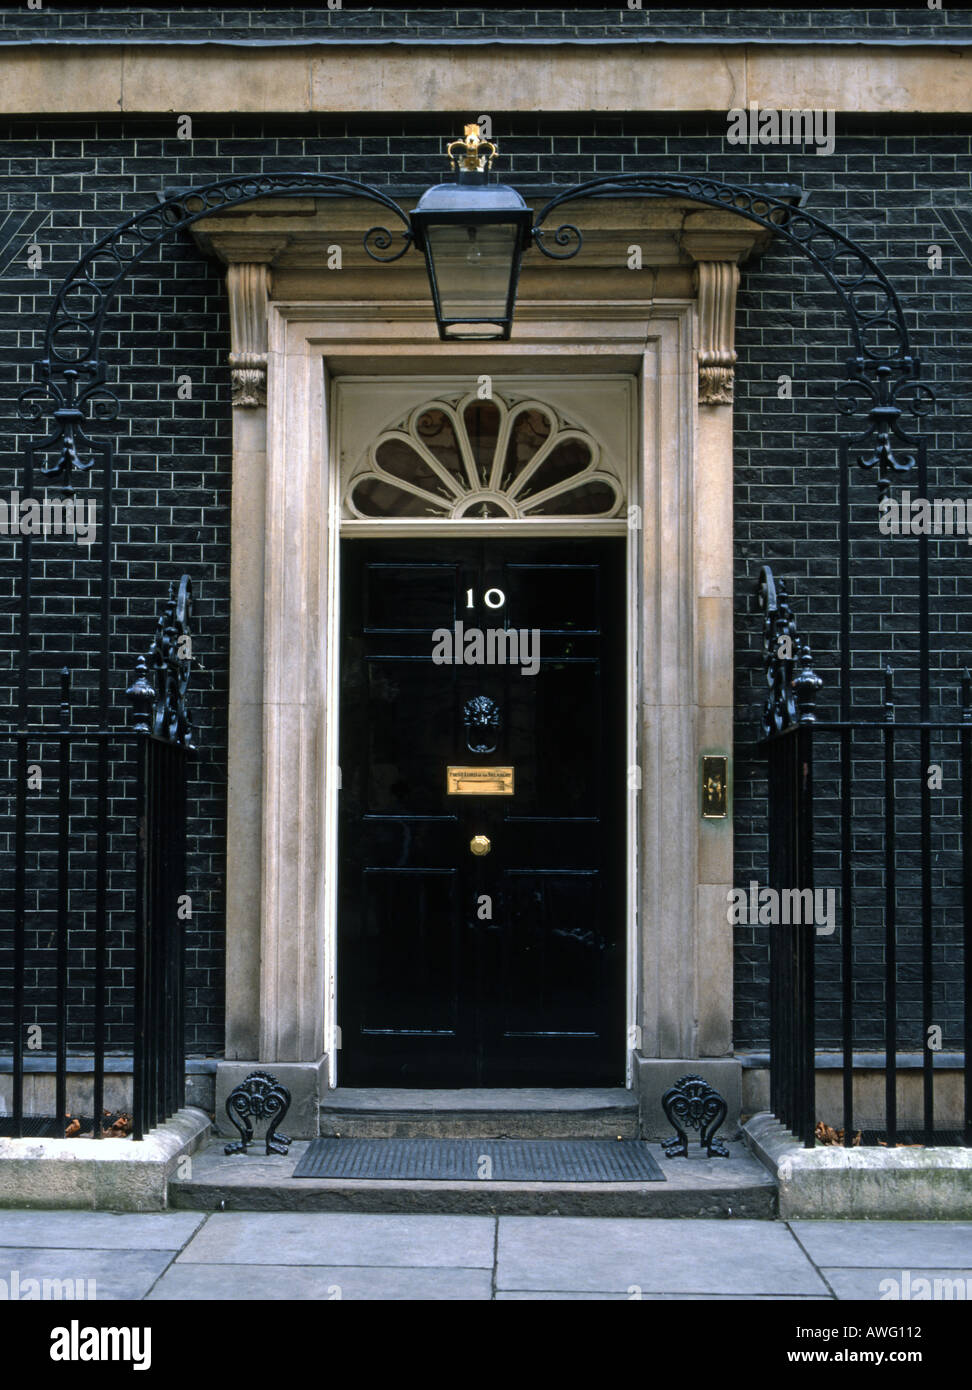 Gran Bretaña puerta delantera más famosa del 10 de Downing street. 10 de Downing St es la casa en Londres del primer ministro del Reino Unido. La famosa puerta delantera. Foto de stock